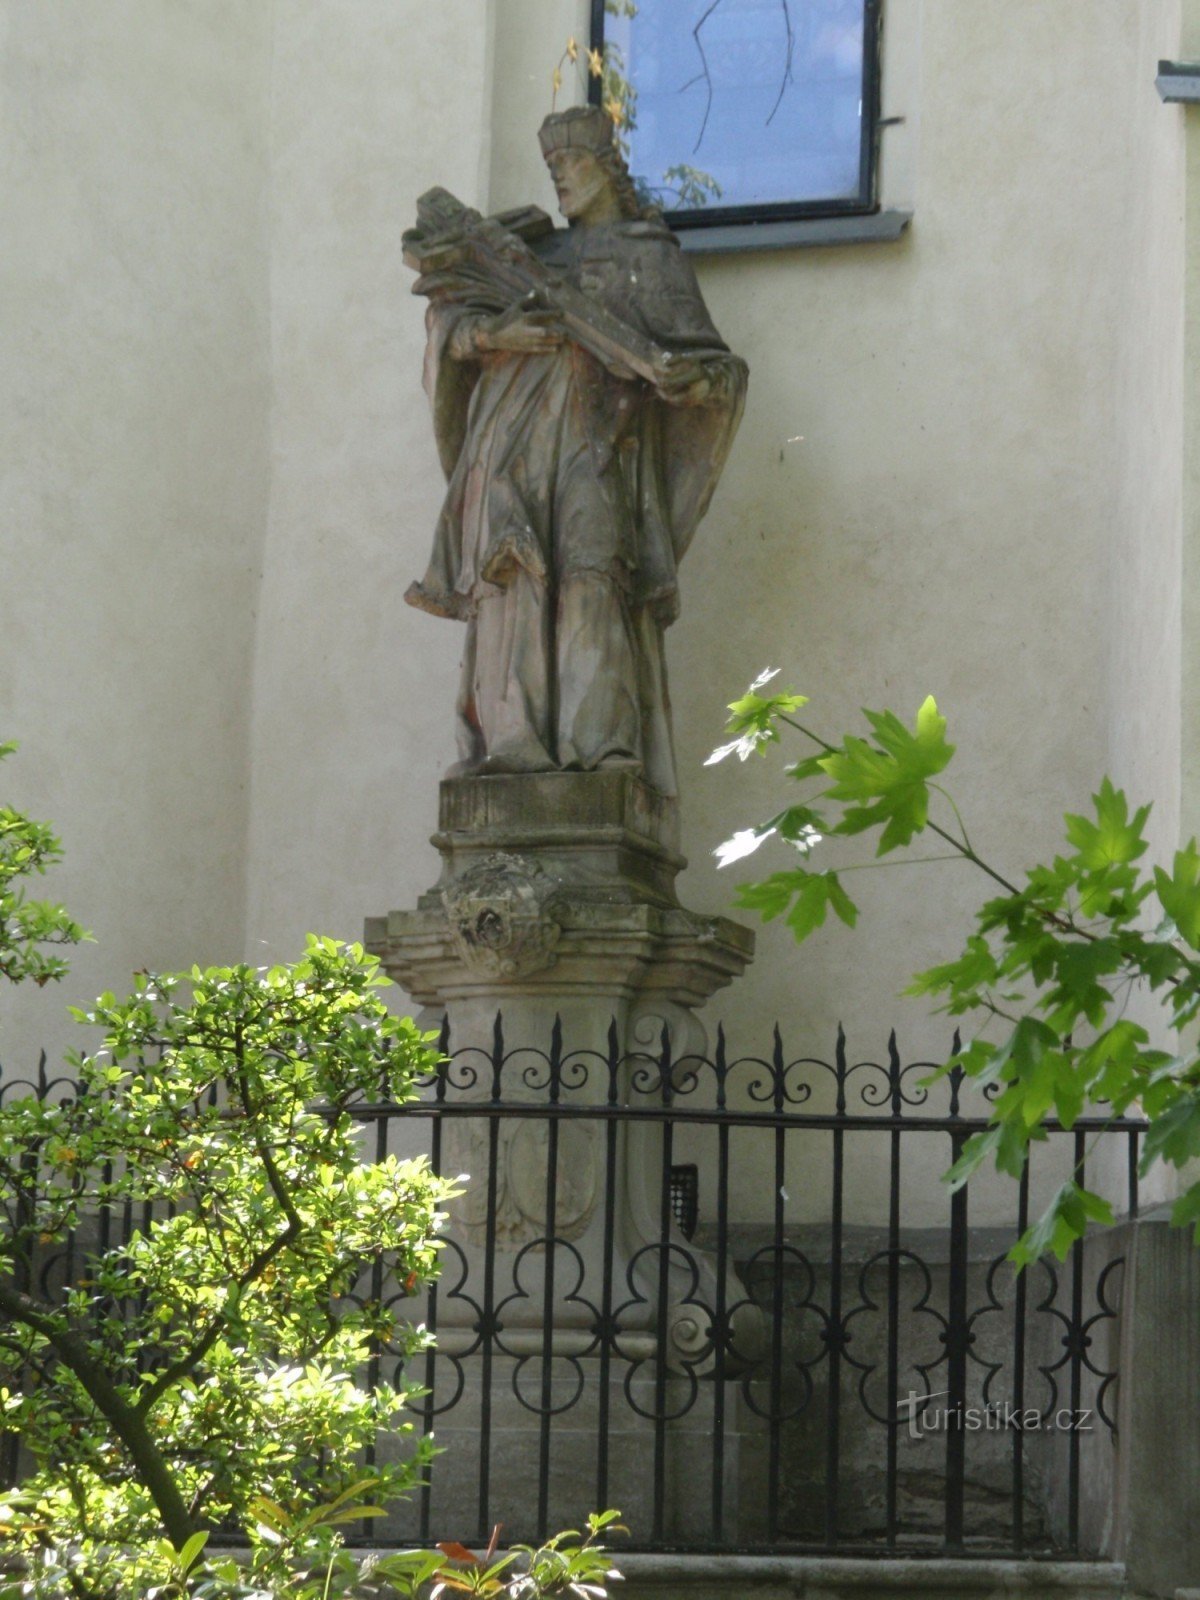 Novo mesto na Moravskem - kip sv. Jan Nepomucký